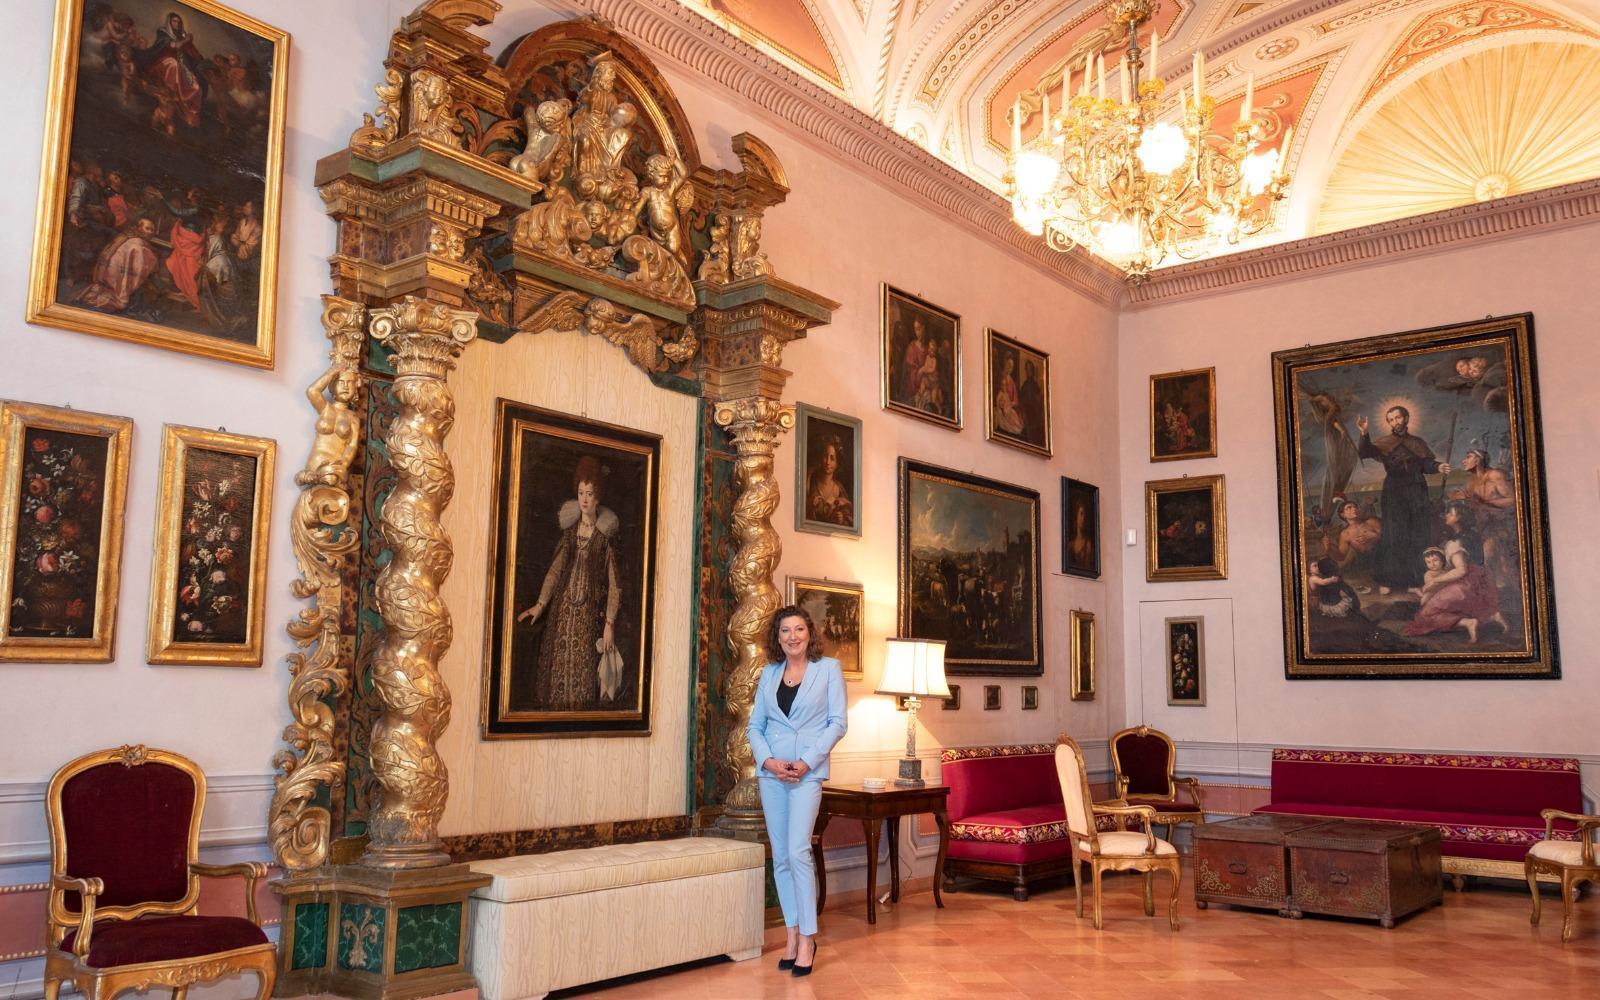 Nella Casa di Giacomo Leopardi suggestive visite a lume di candela con i versi de “Le ricordanze”